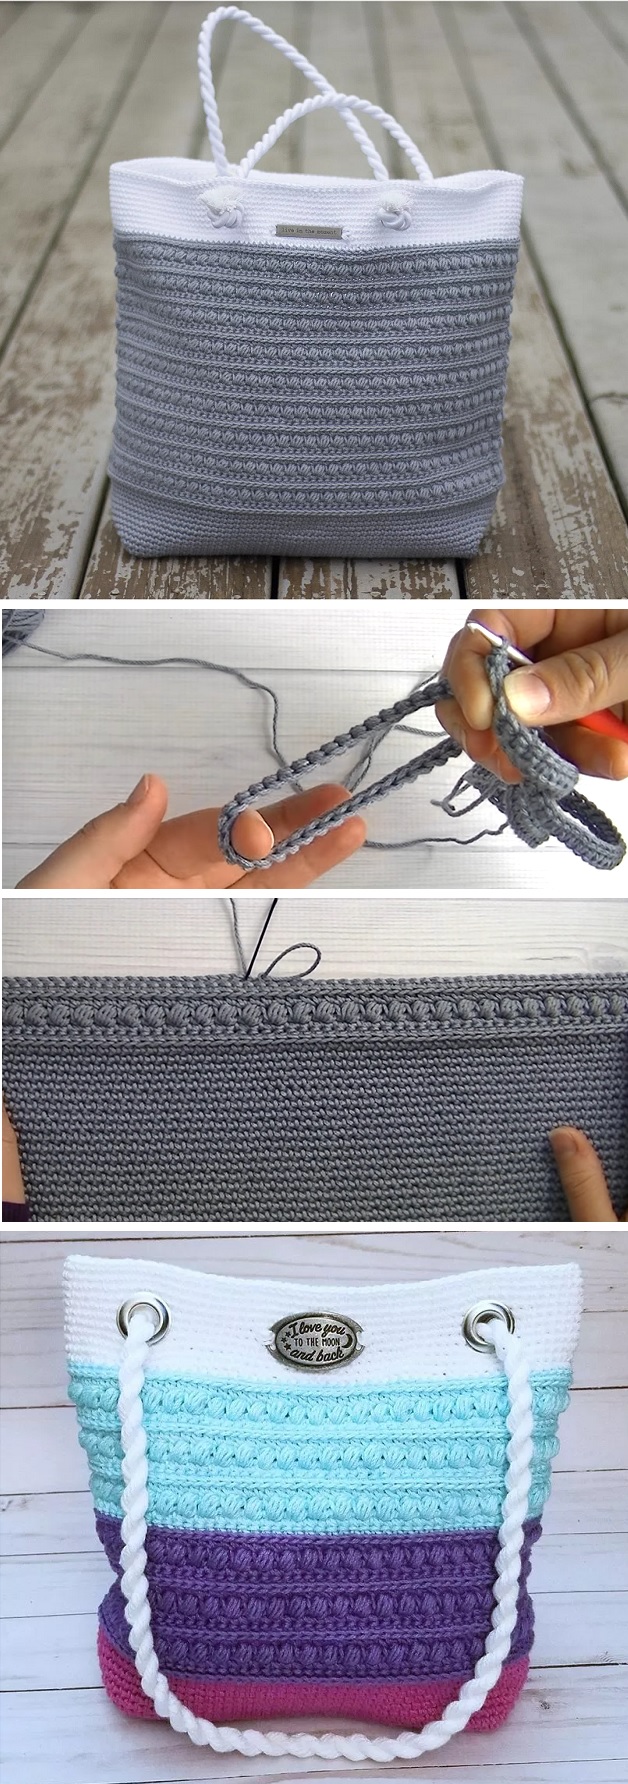 Crochet a Pretty Shoulder Bag